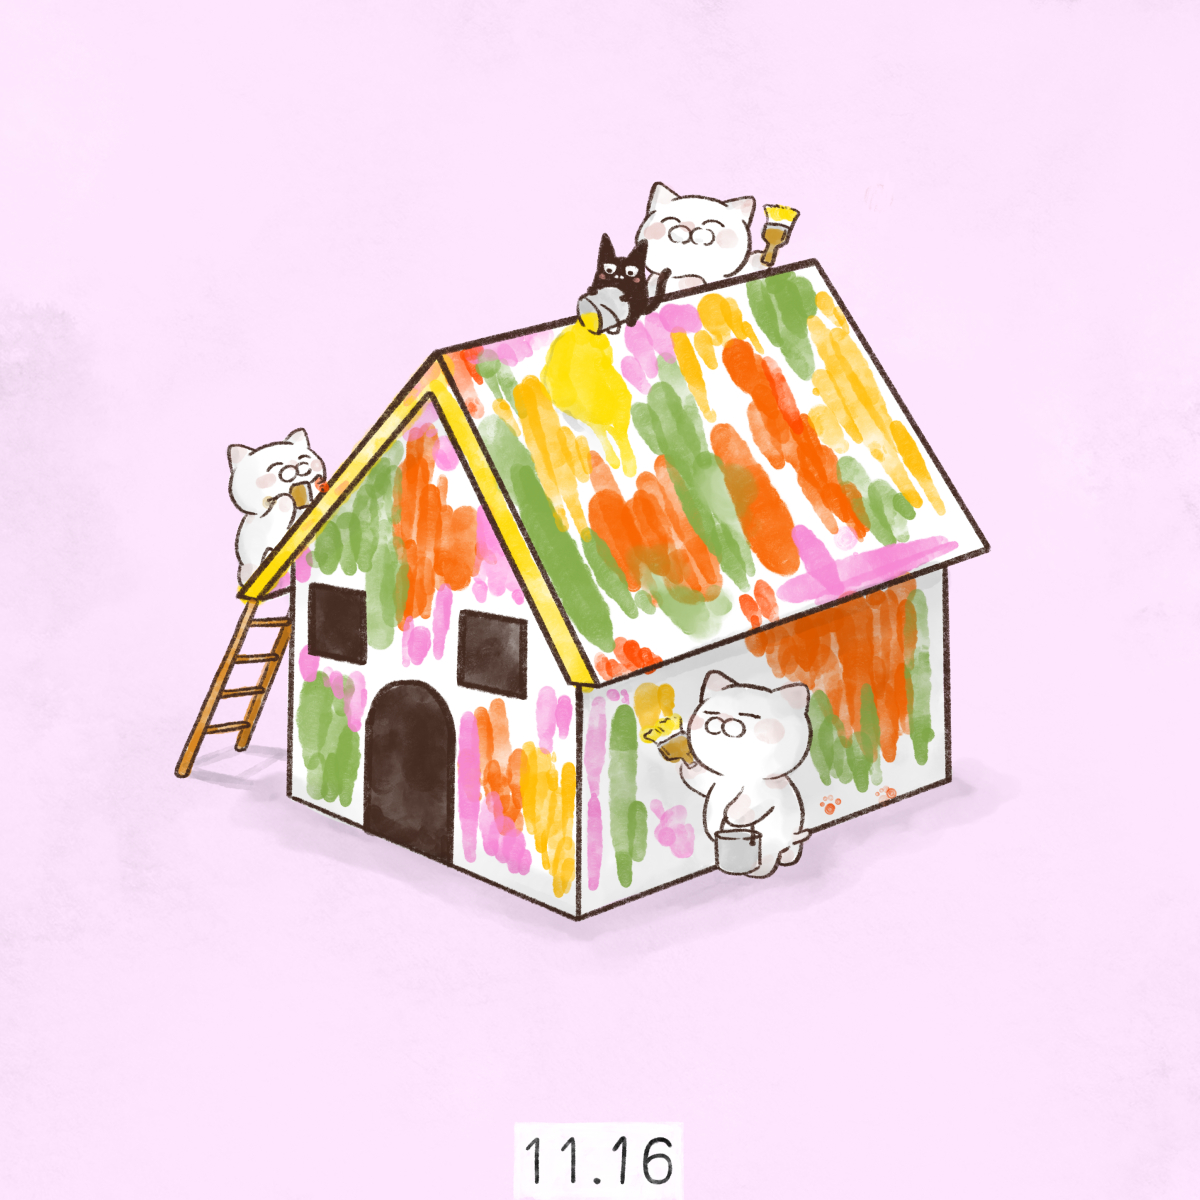 「11月16日
【いいいろの日】
【いいいろ塗装の日】

いい(11)いろ(16)」|大和猫のイラスト